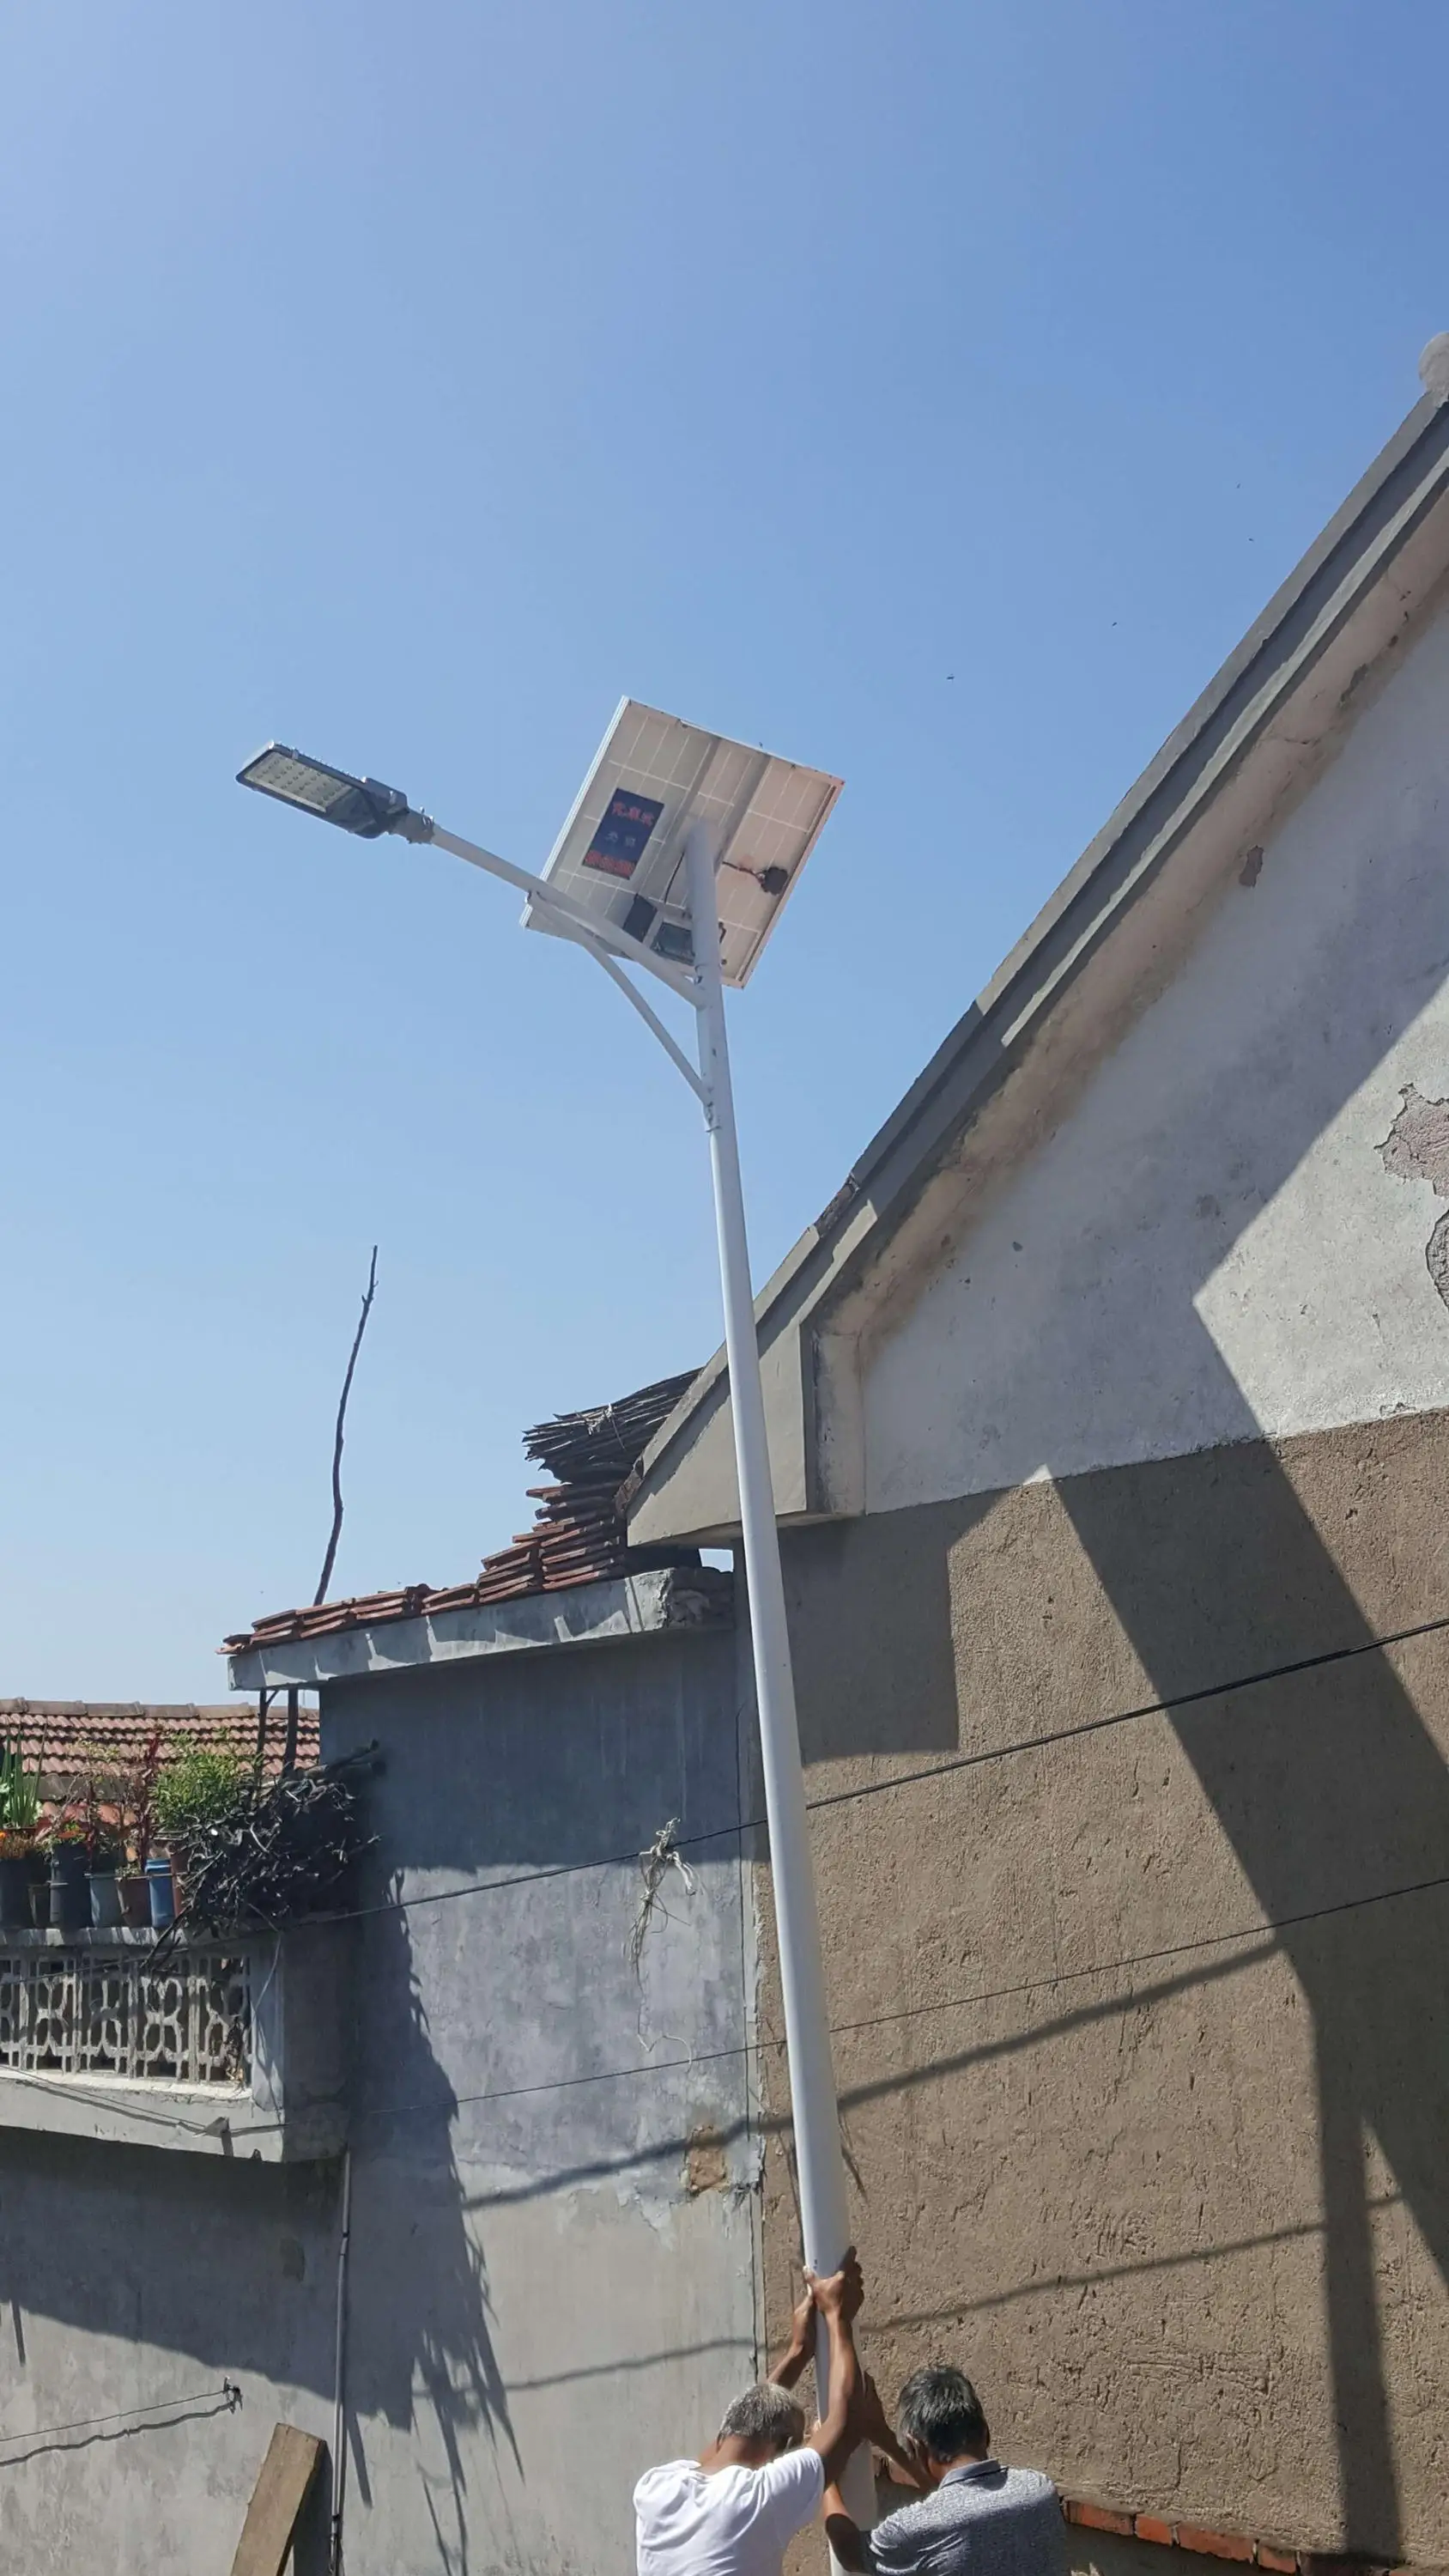 2017 hot sale Custom designed solar street light with CE&Rohs certificate